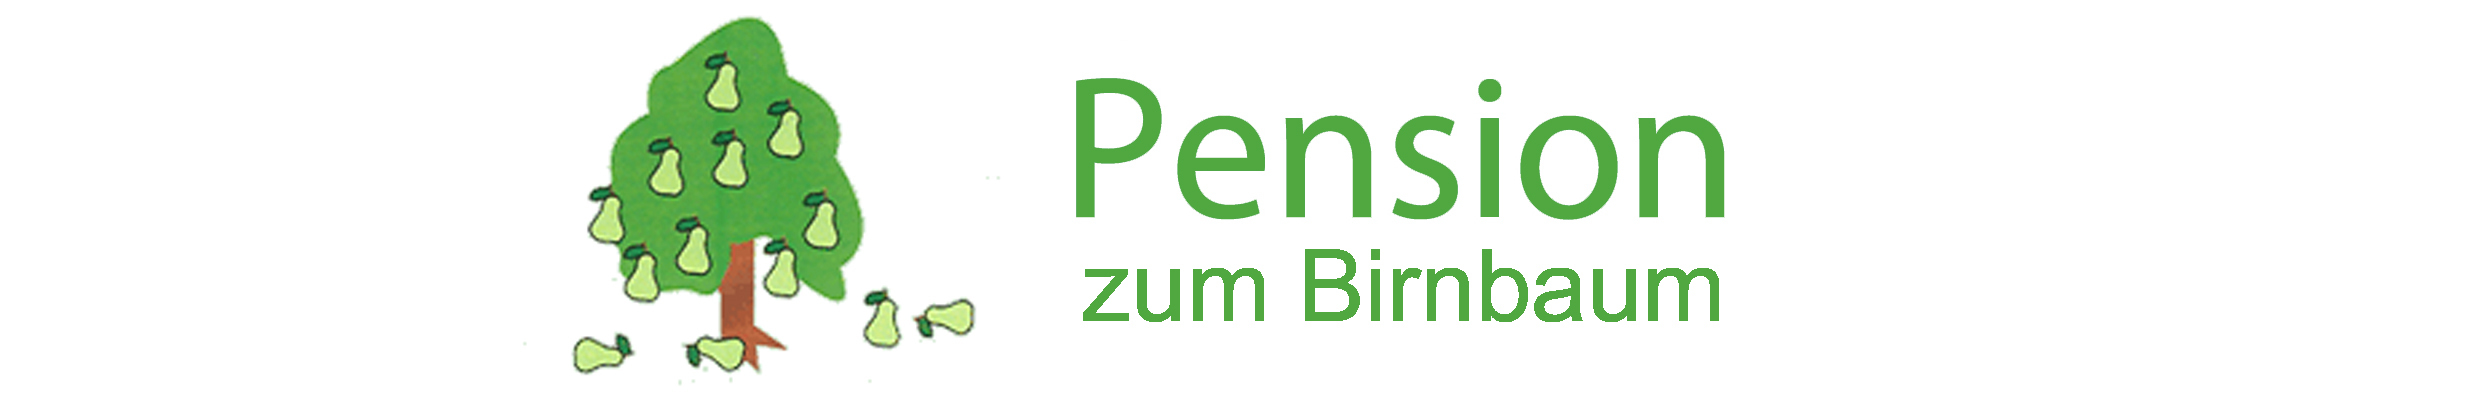 (c) Pension-zum-birnbaum.de